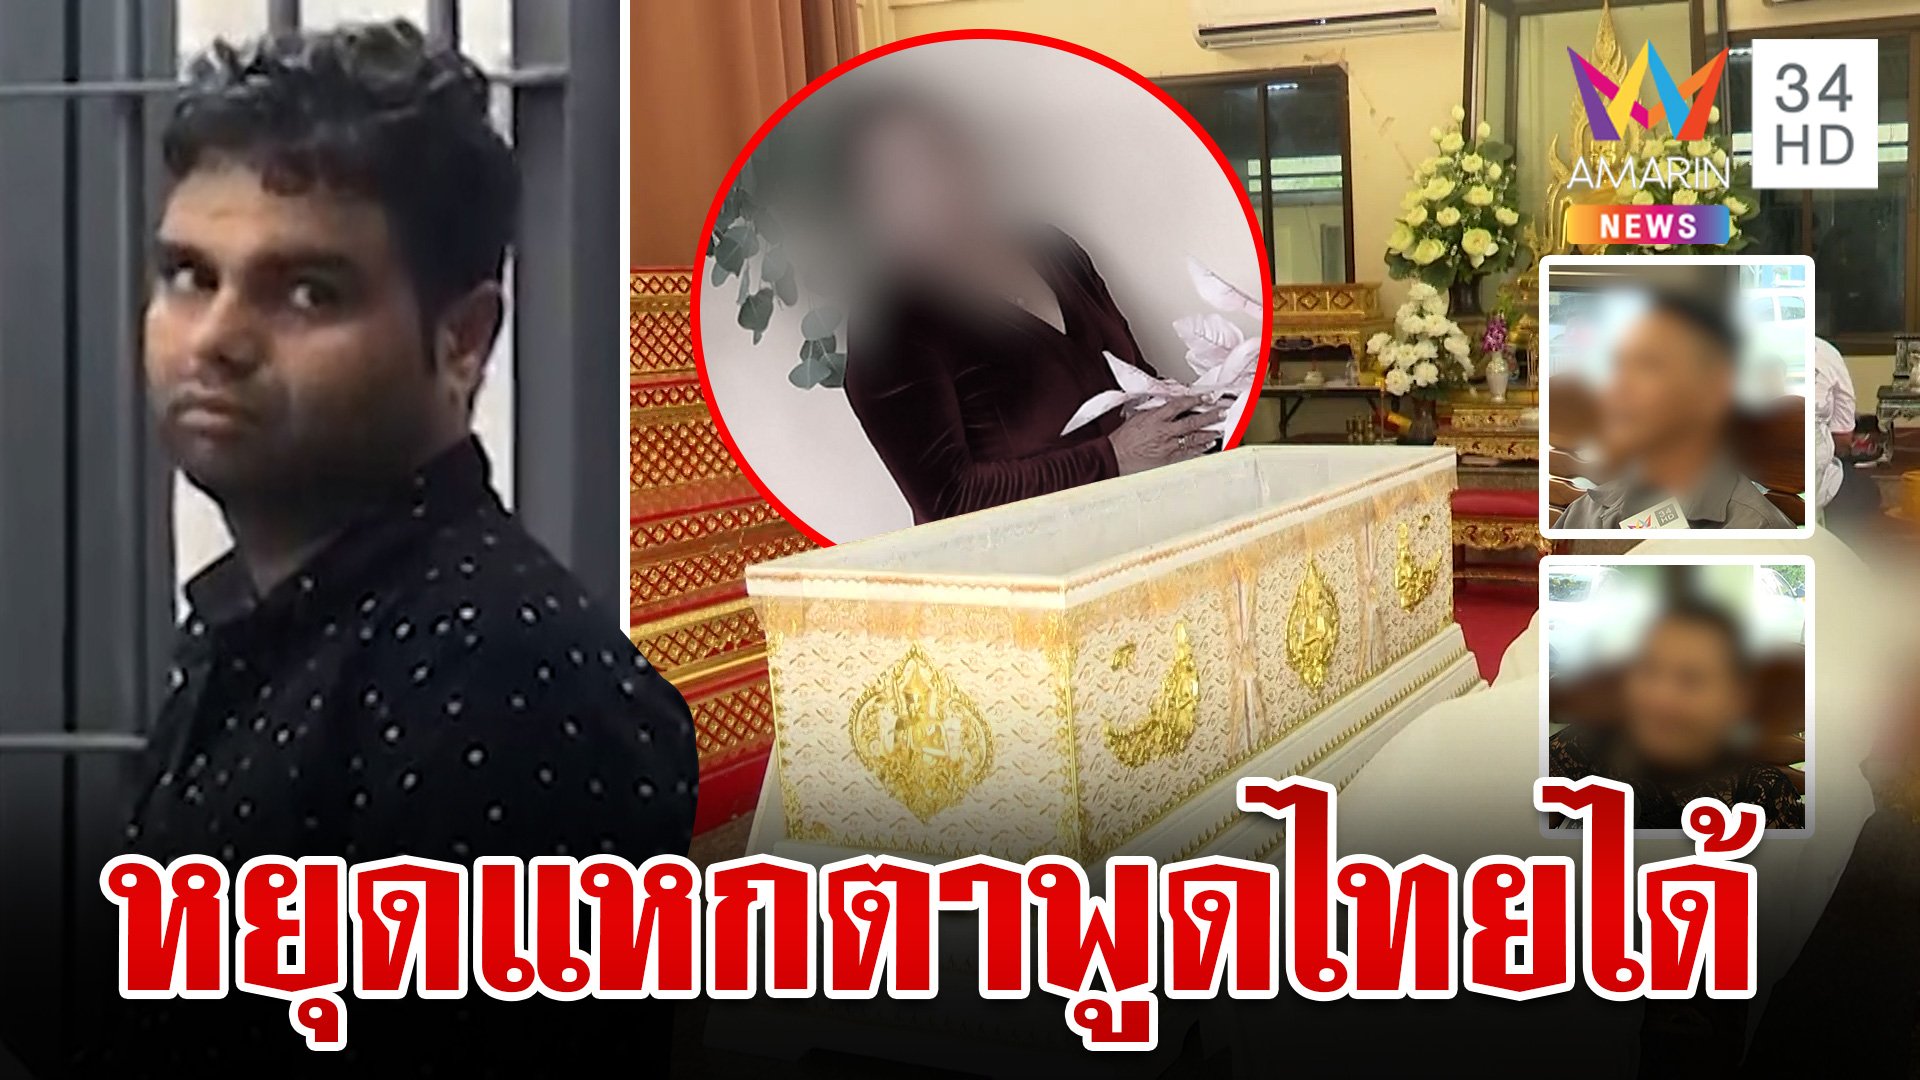 แฉปมเหี้ยมแขกแทงพรุนฆ่าสาวไทย แหกตา ตร. พูดไทยไม่ได้ พี่เหยื่อซัดเลือดเย็น   | ทุบโต๊ะข่าว | 17 เม.ย. 67 | AMARIN TVHD34